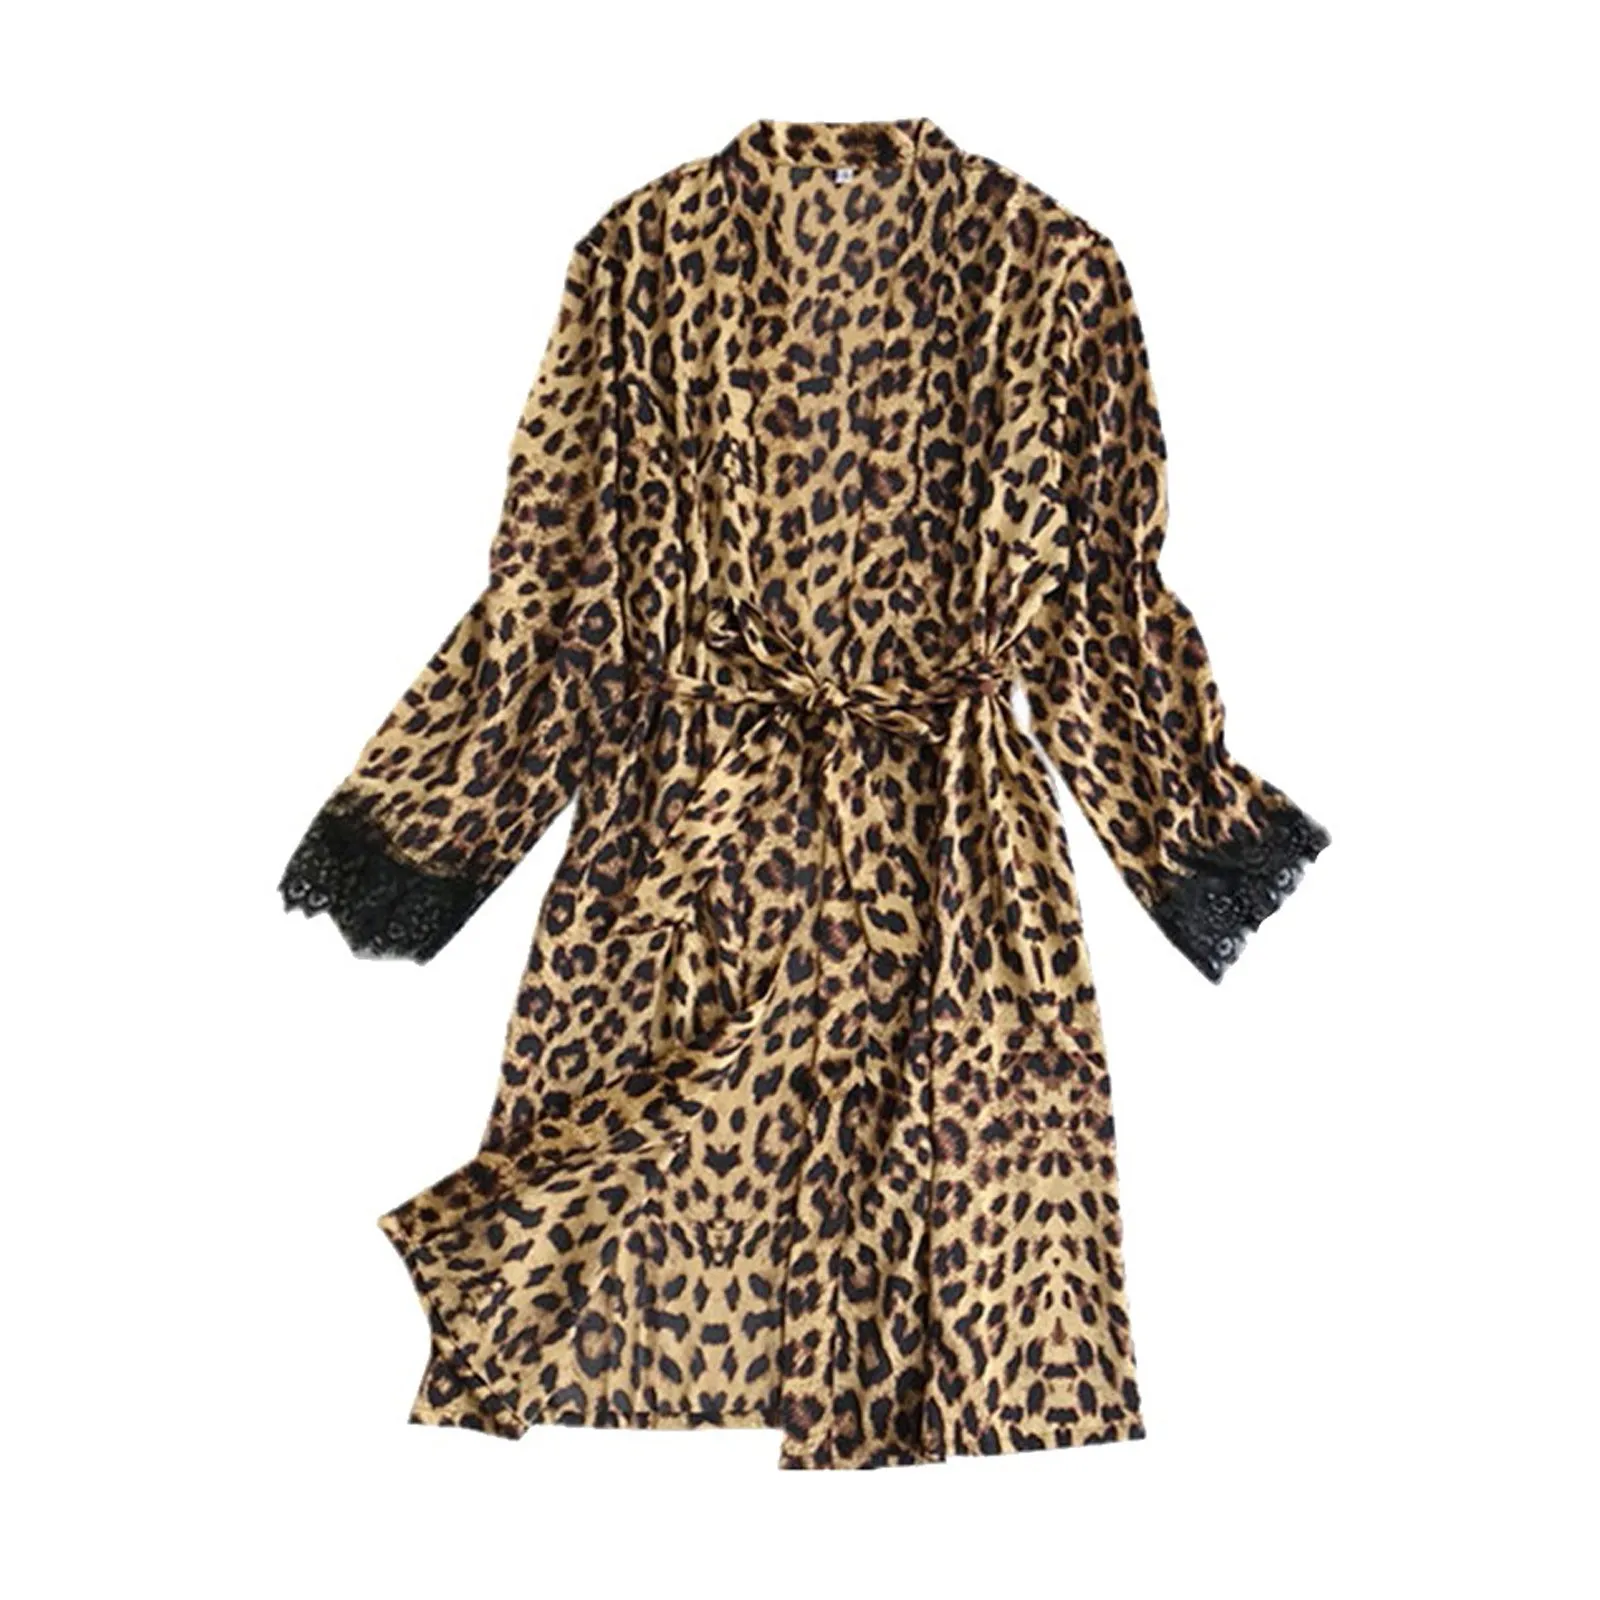 

Халат женский с леопардовым принтом, шелковая атласная ночная рубашка с принтом, Пижама, халат, 4XL